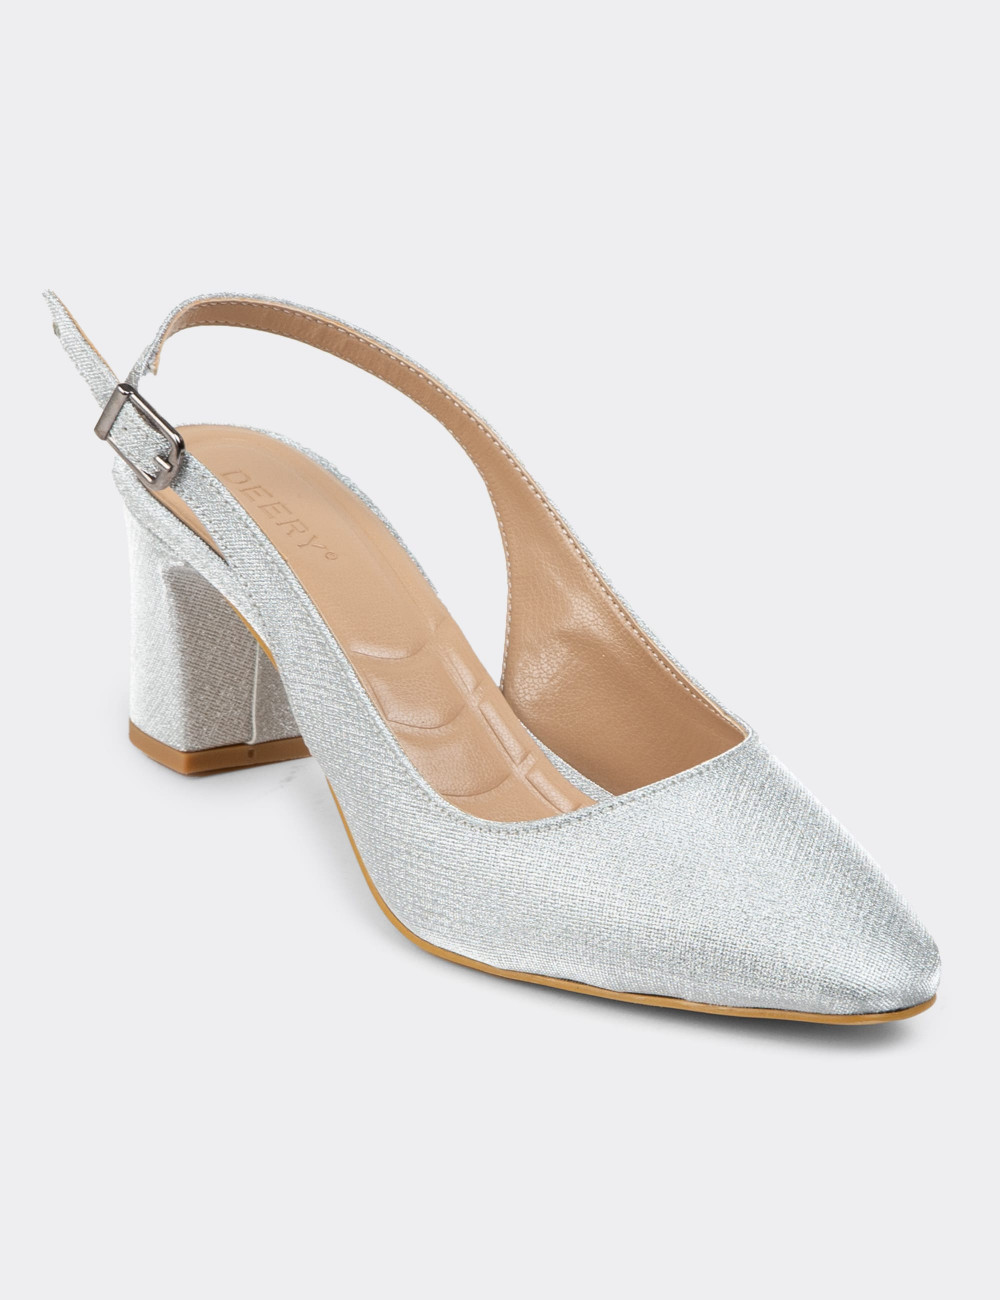 Gümüş Rengi Simli Kadın Topuklu Ayakkabı - K0803ZGMSM01